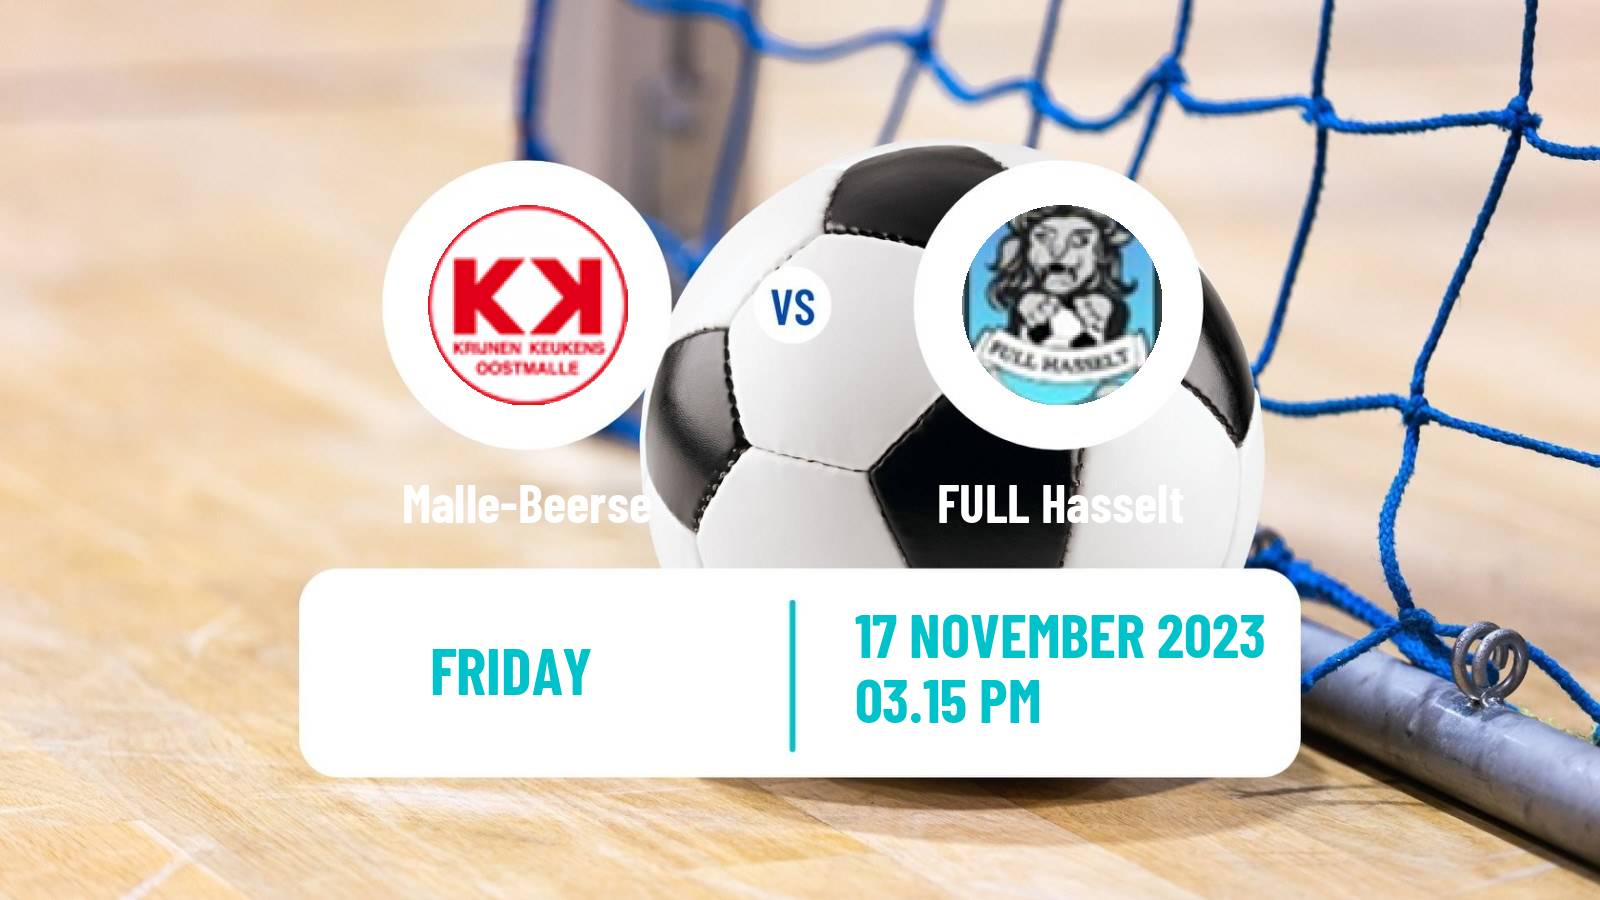 Futsal Belgian Division 1 Futsal Malle-Beerse - FULL Hasselt